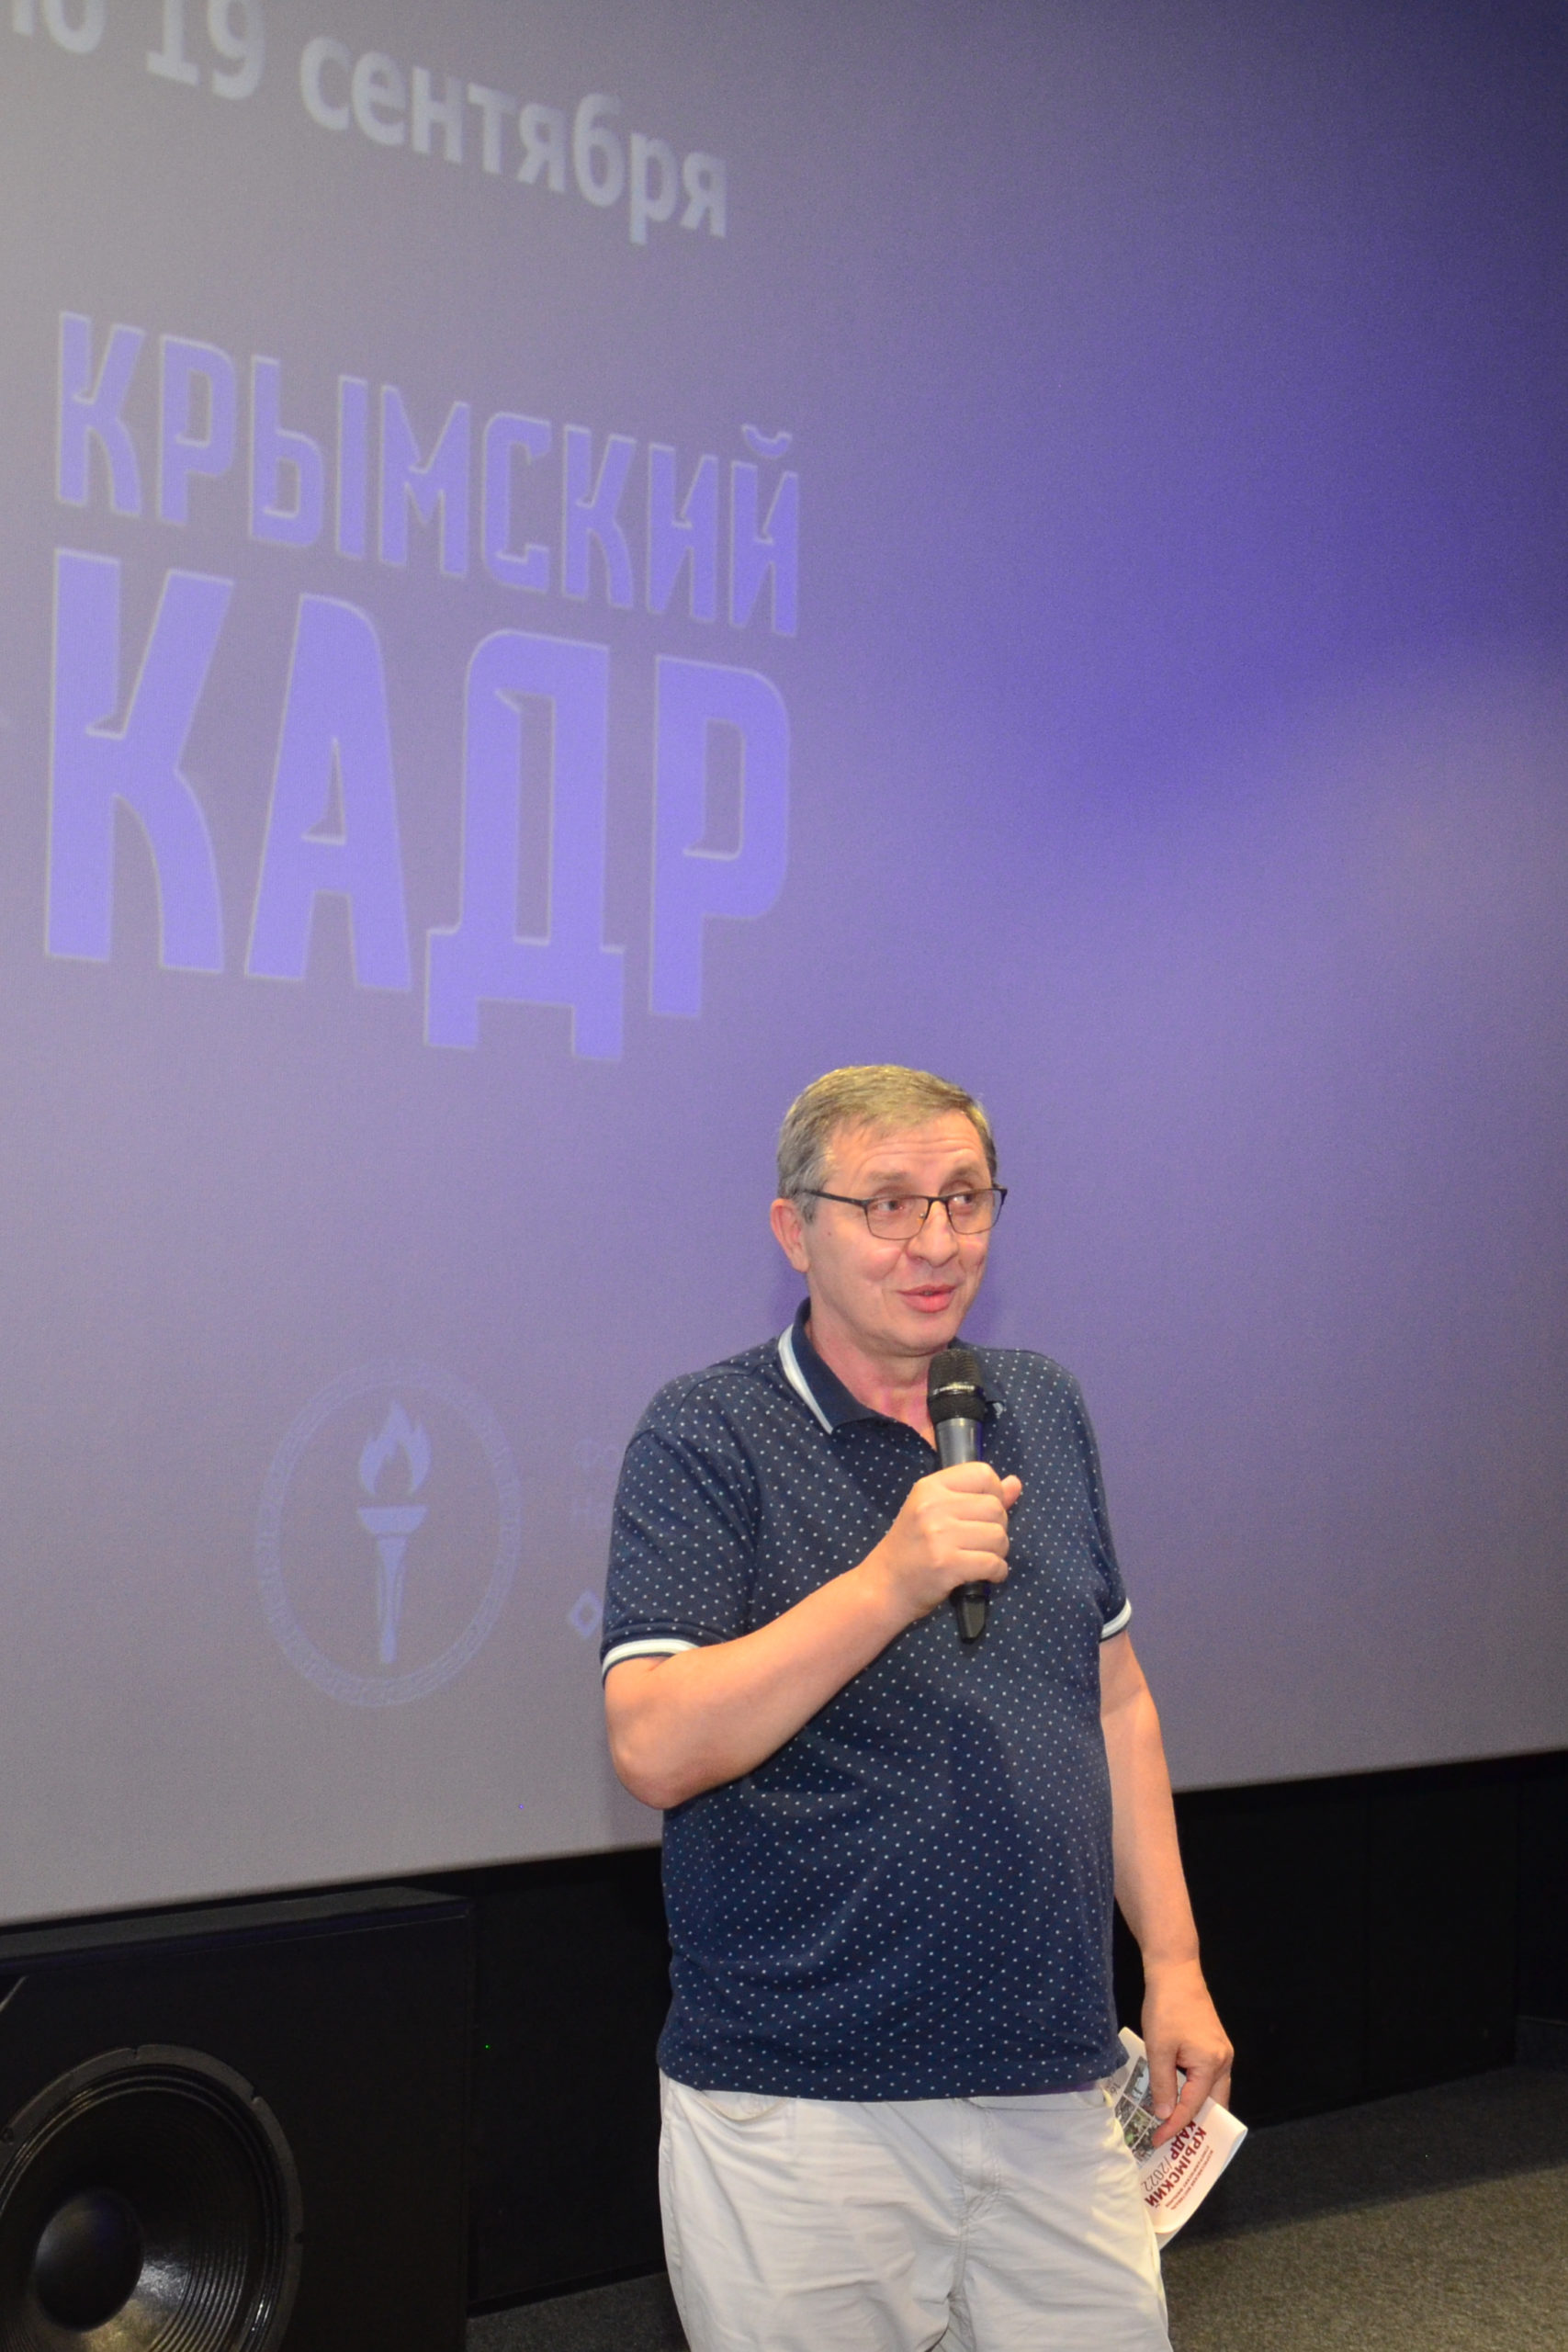 В Симферополе открылся кинофестиваль «Крымский Кадр»